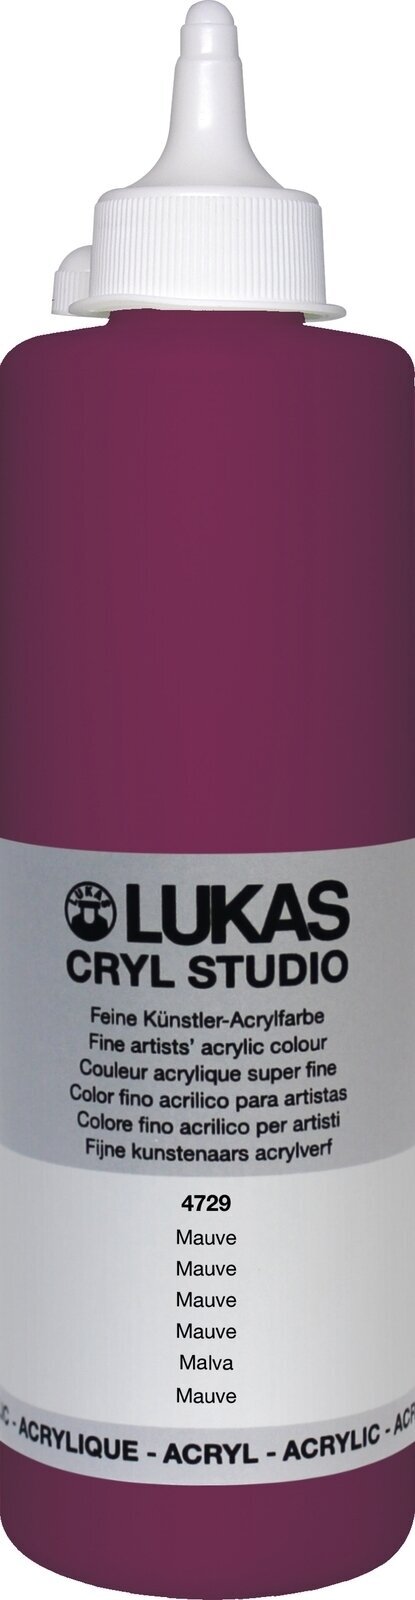 Akrylfärg Lukas Cryl Studio Akrylfärg 500 ml Mauve